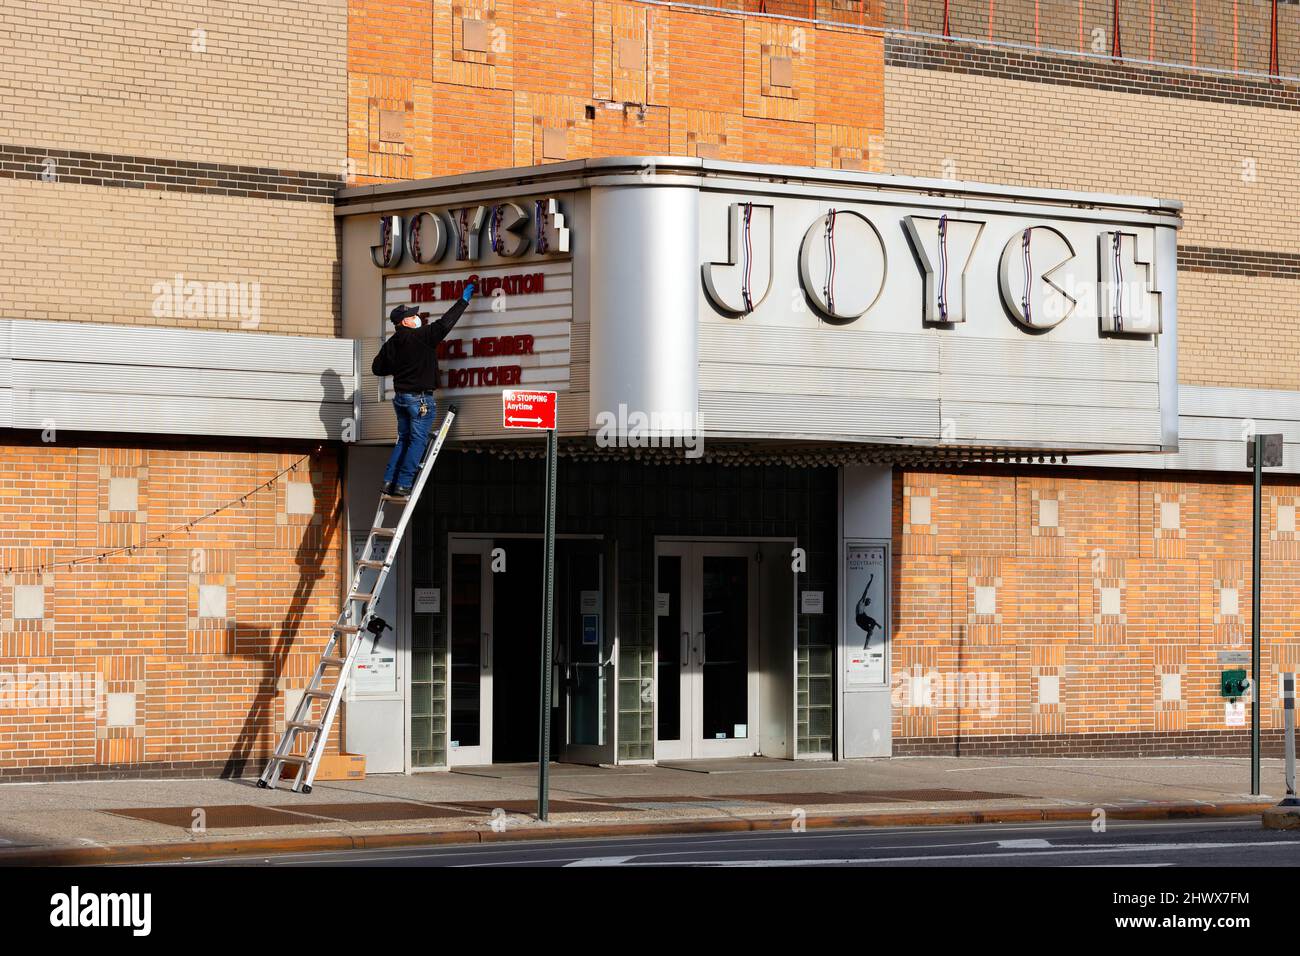 Une personne change les lettres sur le chapiteau du théâtre Joyce, 175 8th Ave, New York, NY. Banque D'Images